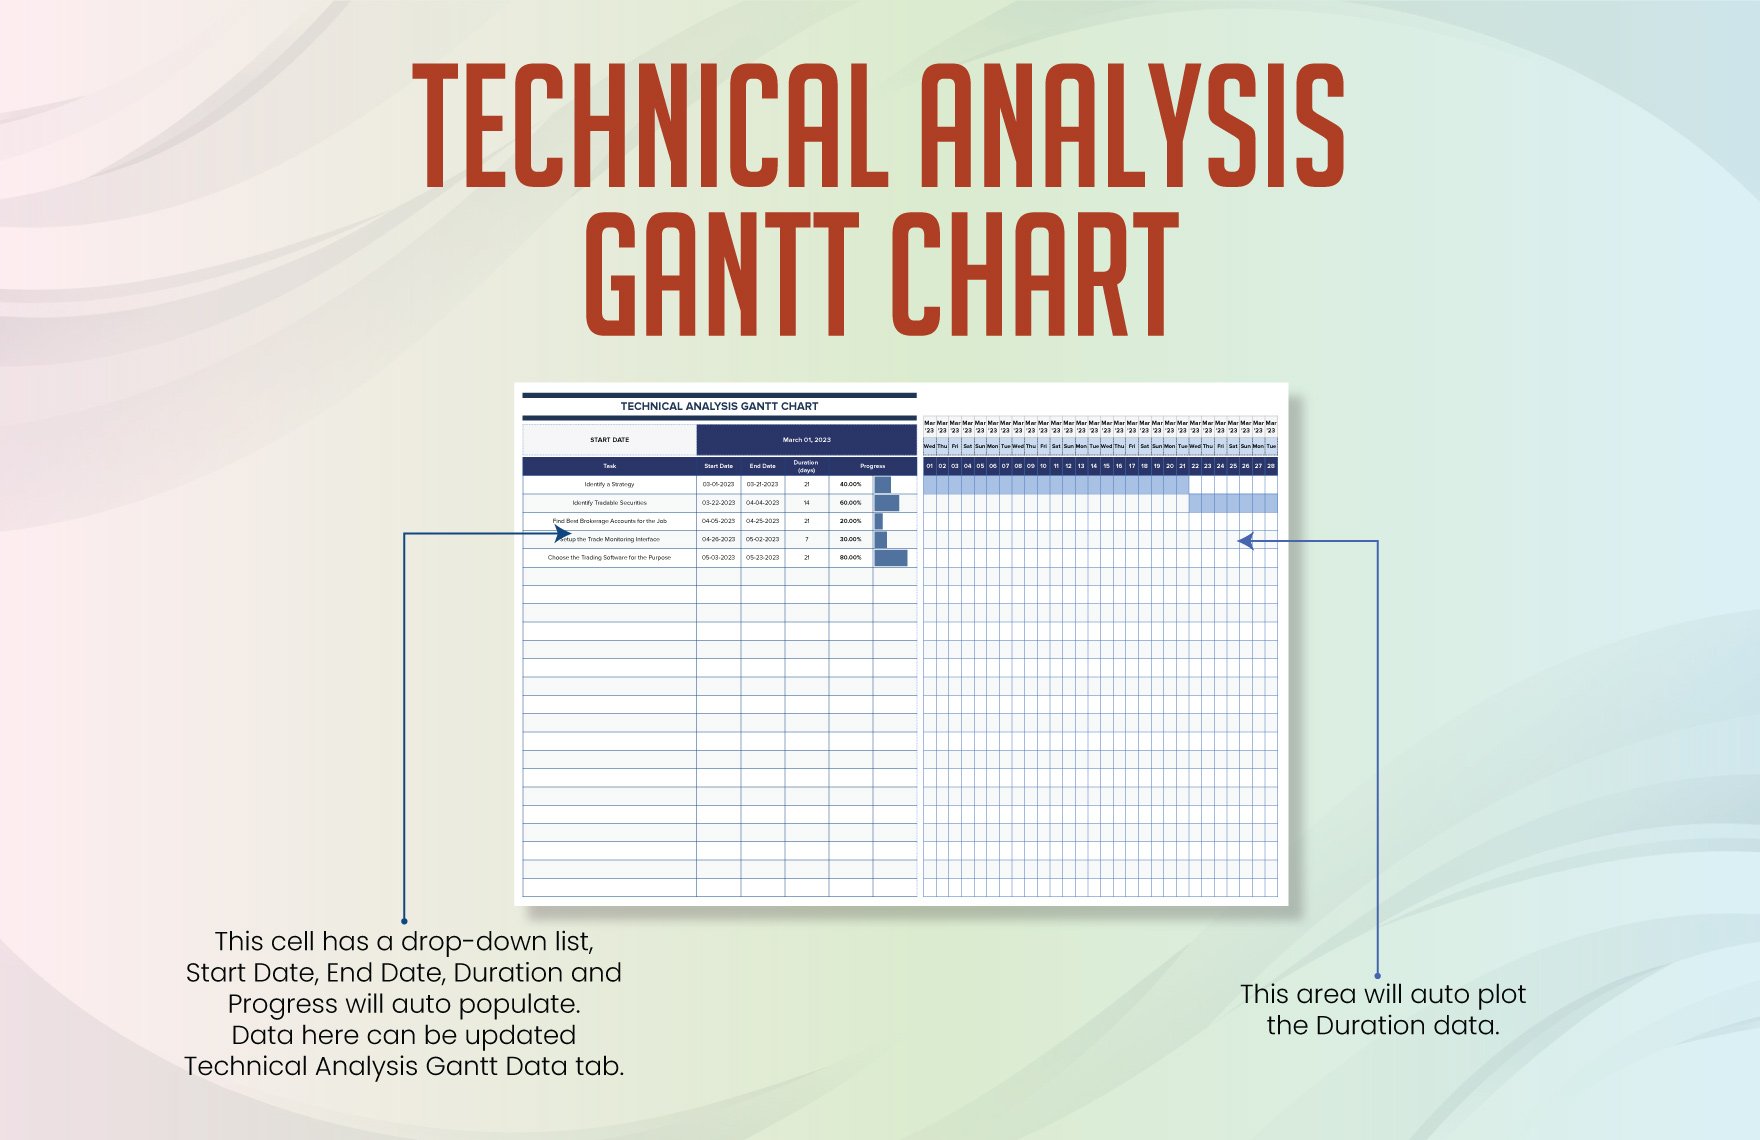 Technical Analysis Gantt Chart Template